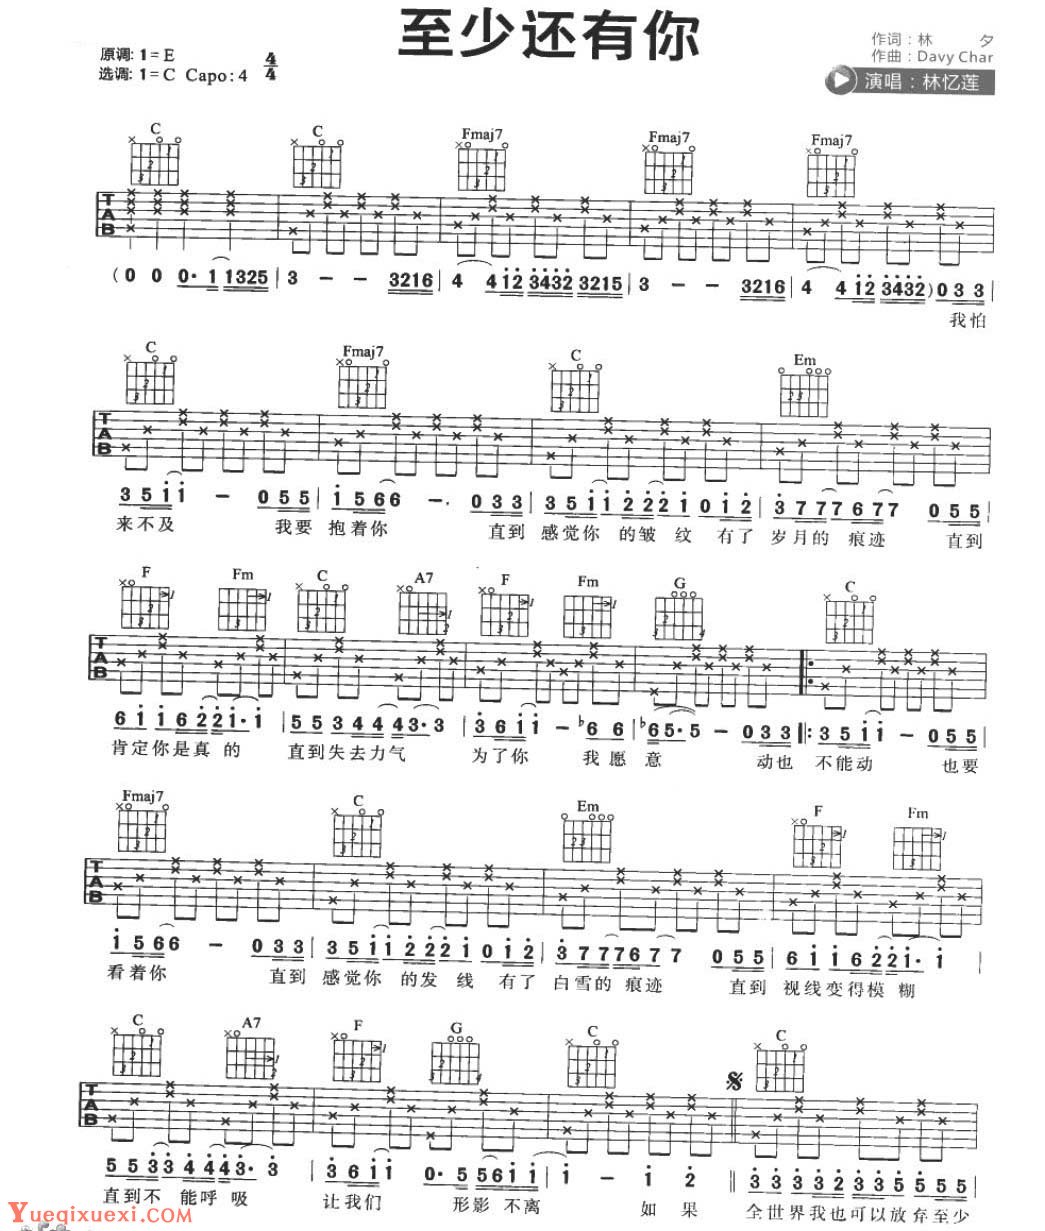 适合吉他初学者弹的歌曲《那些花儿》C大调/四四拍/分解和弦-吉他曲谱 - 乐器学习网